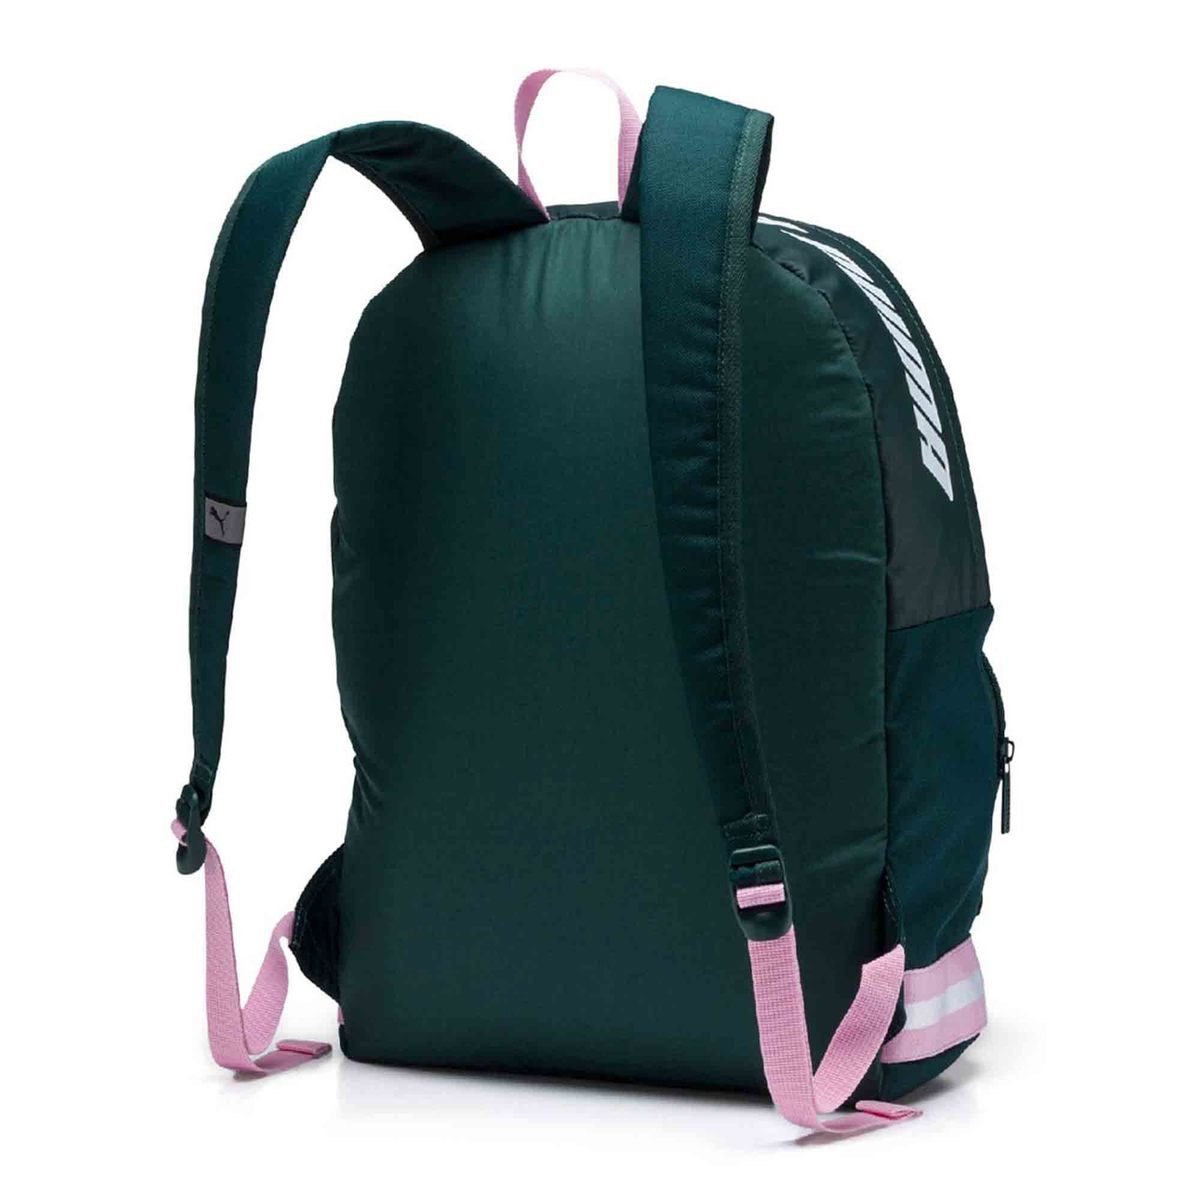 PUMA Core Backpack Green 07570903